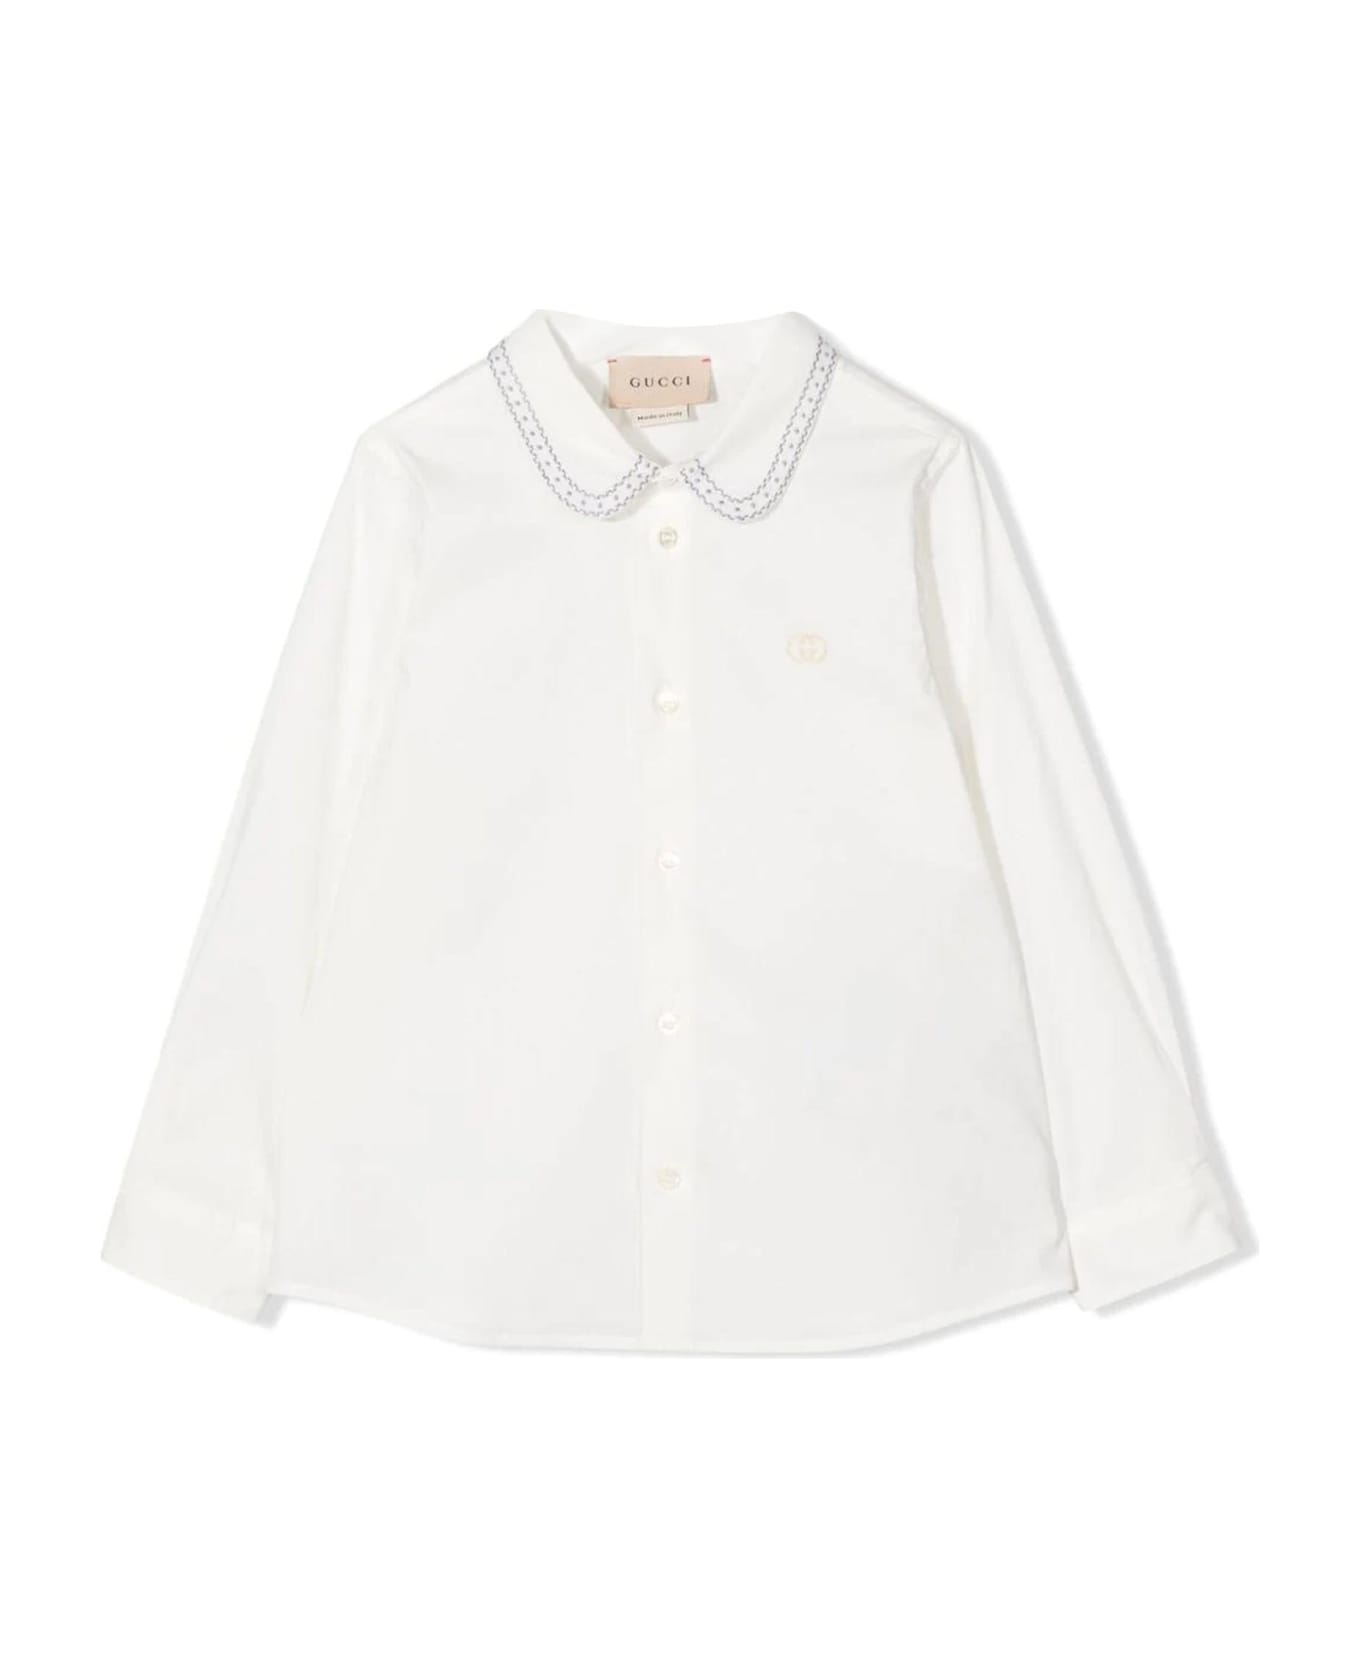 Gucci Kids Shirts White - White シャツ